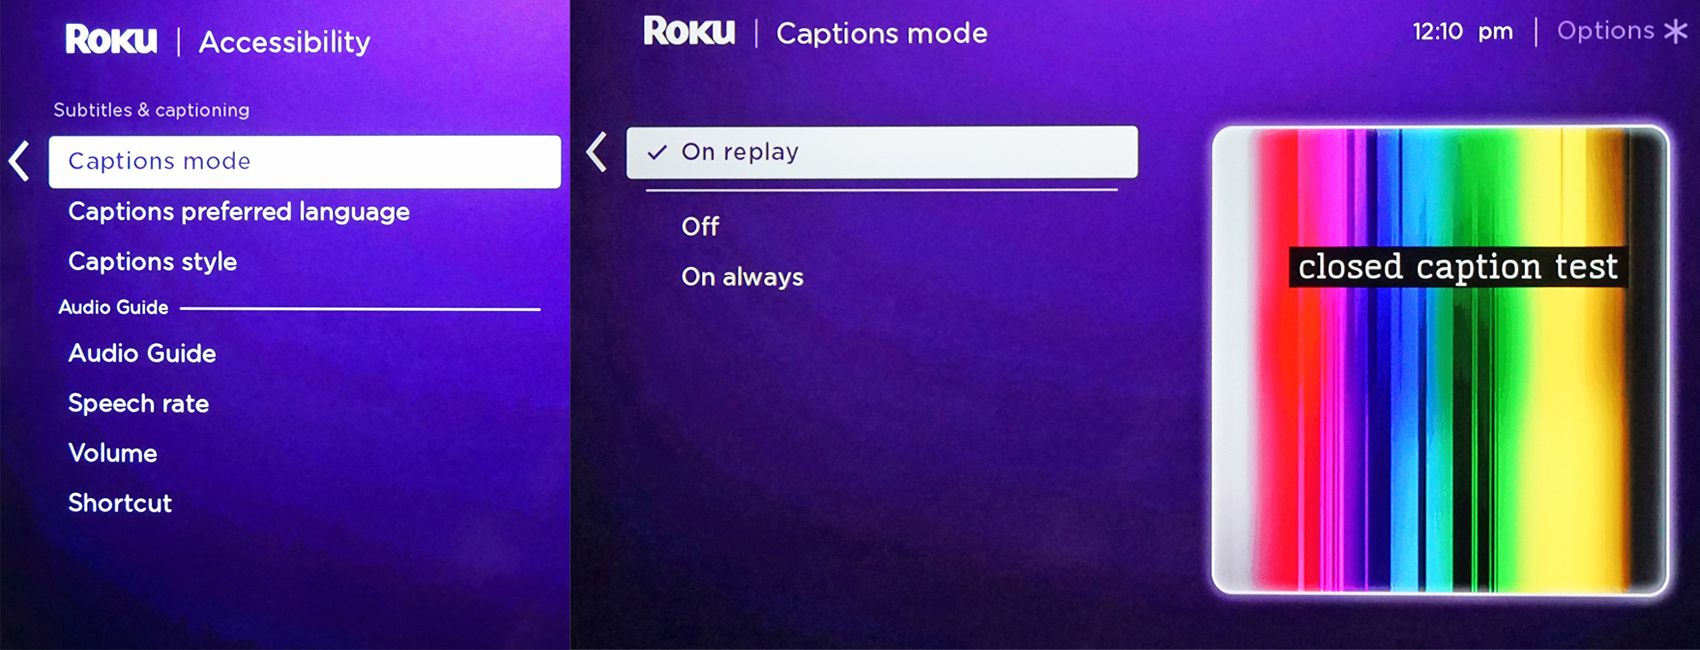 Roku app game evolution 134003